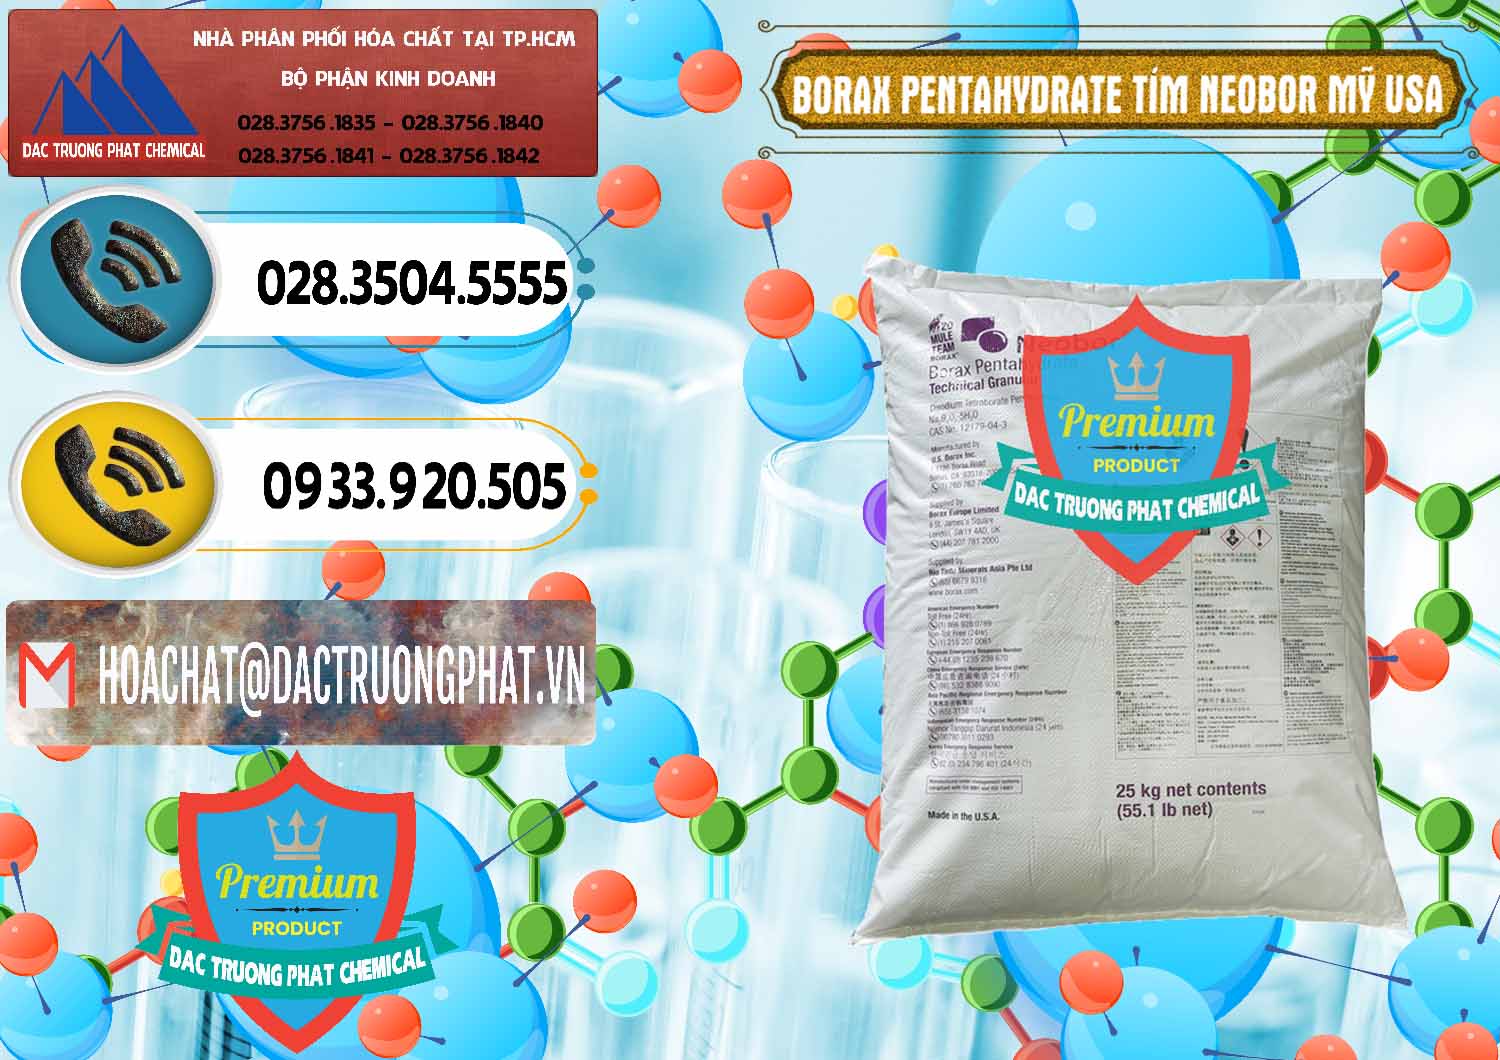 Công ty chuyên cung ứng và bán Borax Pentahydrate Bao Tím Neobor TG Mỹ Usa - 0277 - Cty chuyên kinh doanh ( cung cấp ) hóa chất tại TP.HCM - hoachatdetnhuom.vn